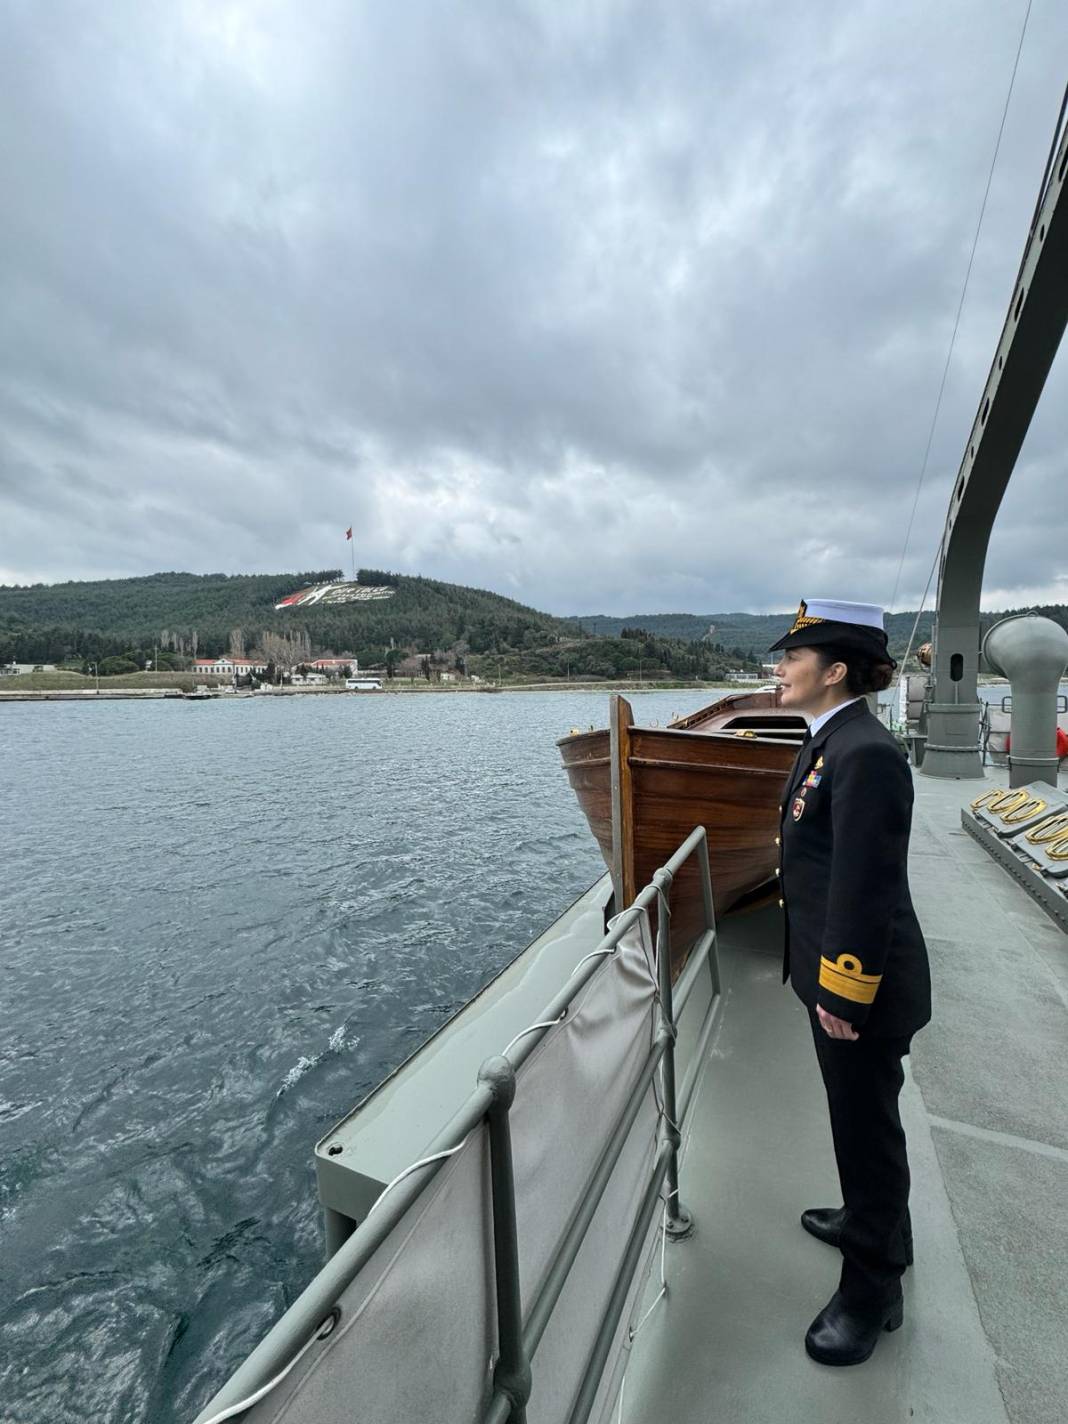 İlk kadın amirali Gökçen Fırat Deniz Harp Okulu öğrencileriyle TCG Nusret'te buluştu 22